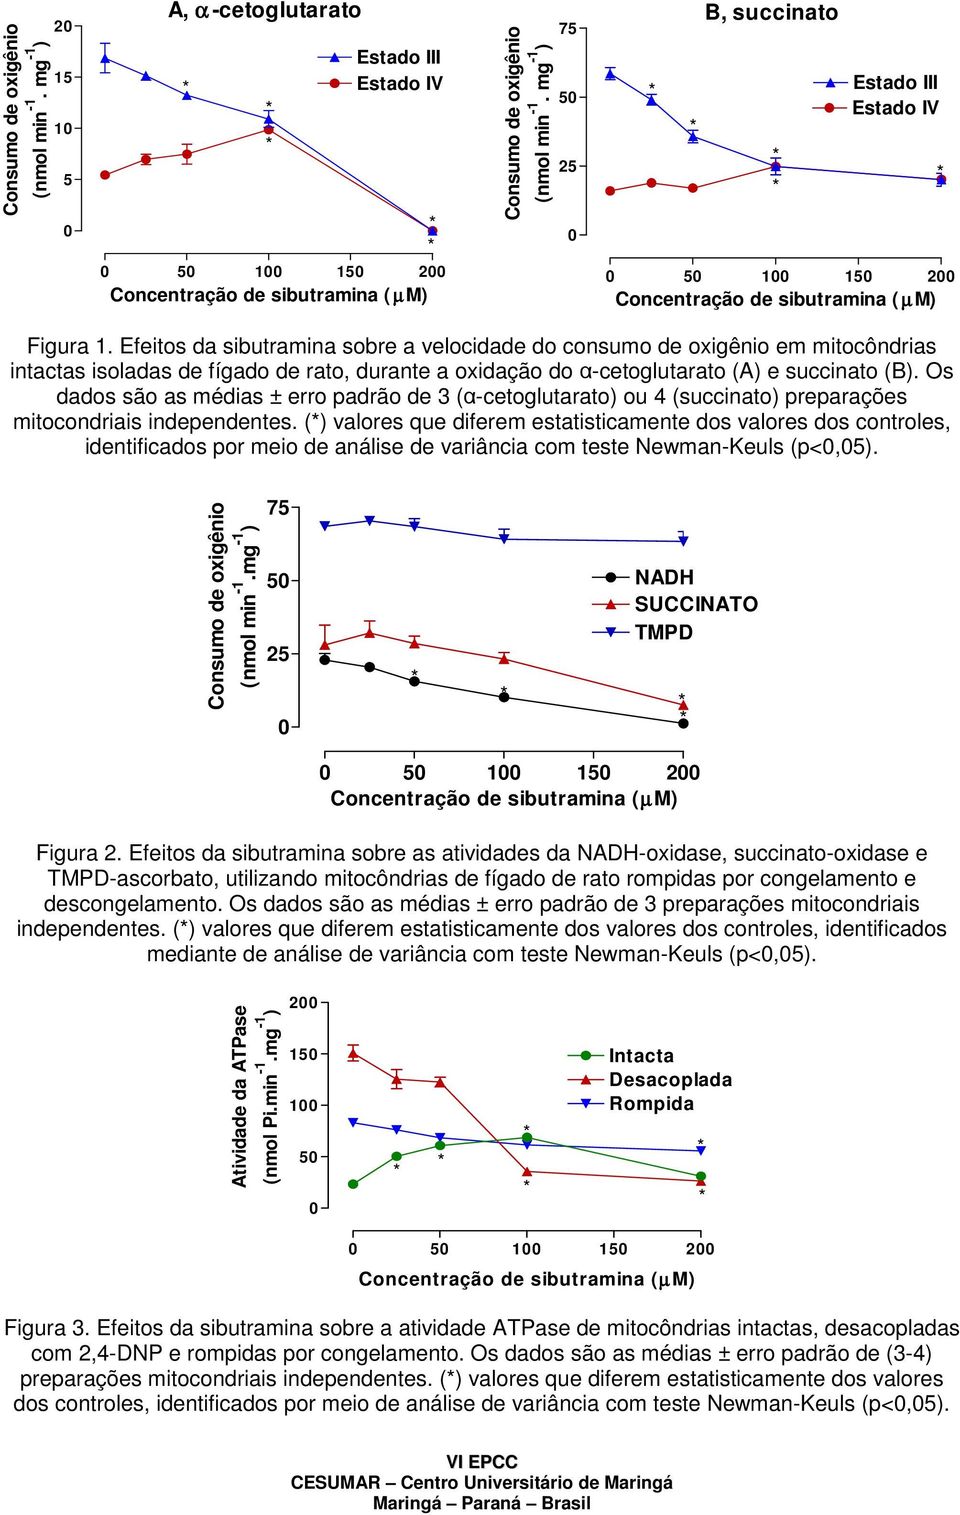 Efeitos da sibutramina sobre a velocidade do consumo de oxigênio em mitocôndrias intactas isoladas de fígado de rato, durante a oxidação do α-cetoglutarato (A) e succinato (B).